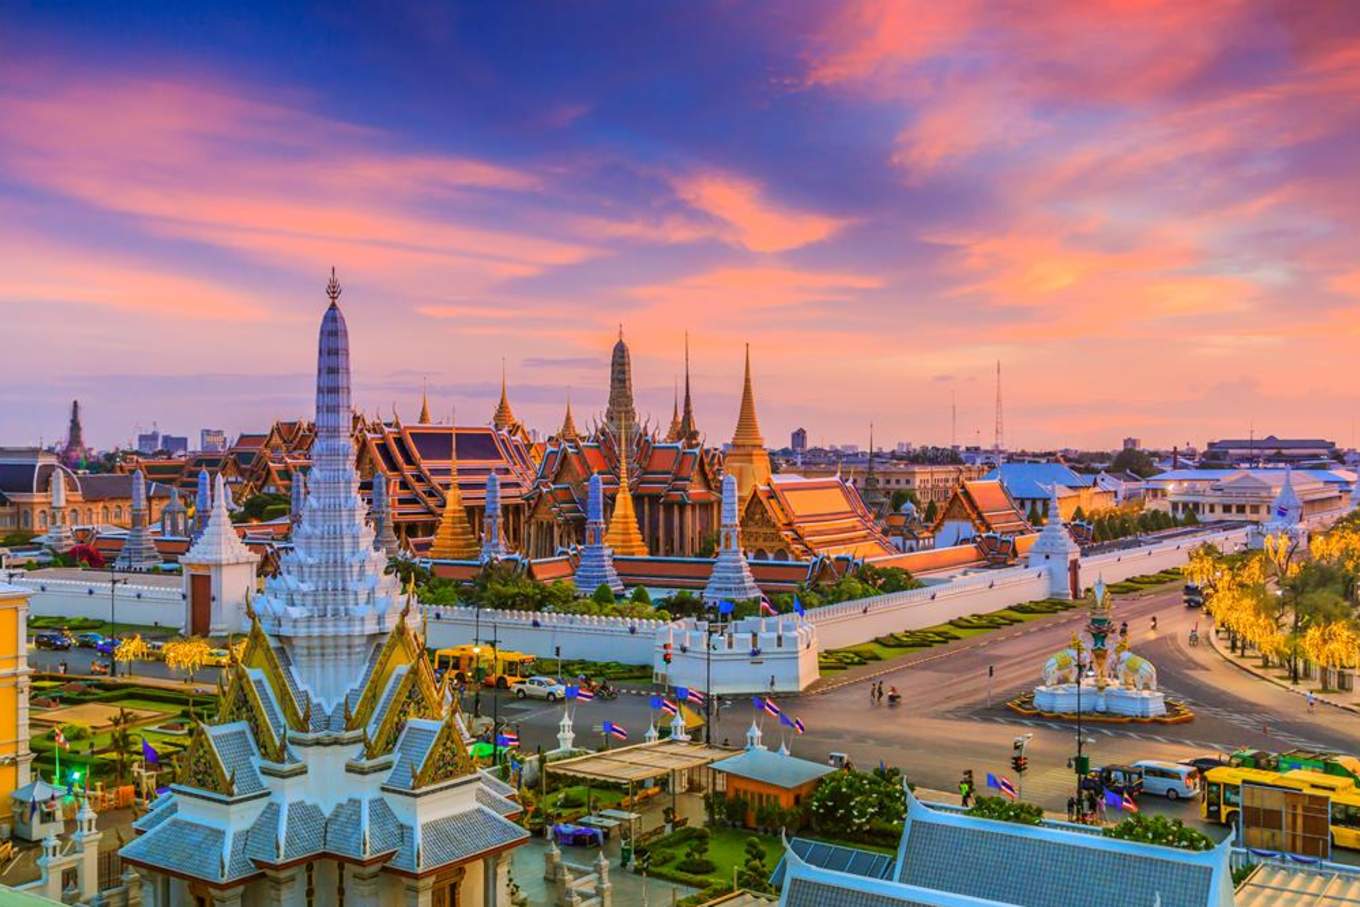 Thái Lan chính thức tiếp nhận cương vị Chủ tịch Diễn đàn Hợp tác Kinh tế châu Á - Thái Bình Dương (APEC) 2022. (Nguồn ảnh: Pixabay)